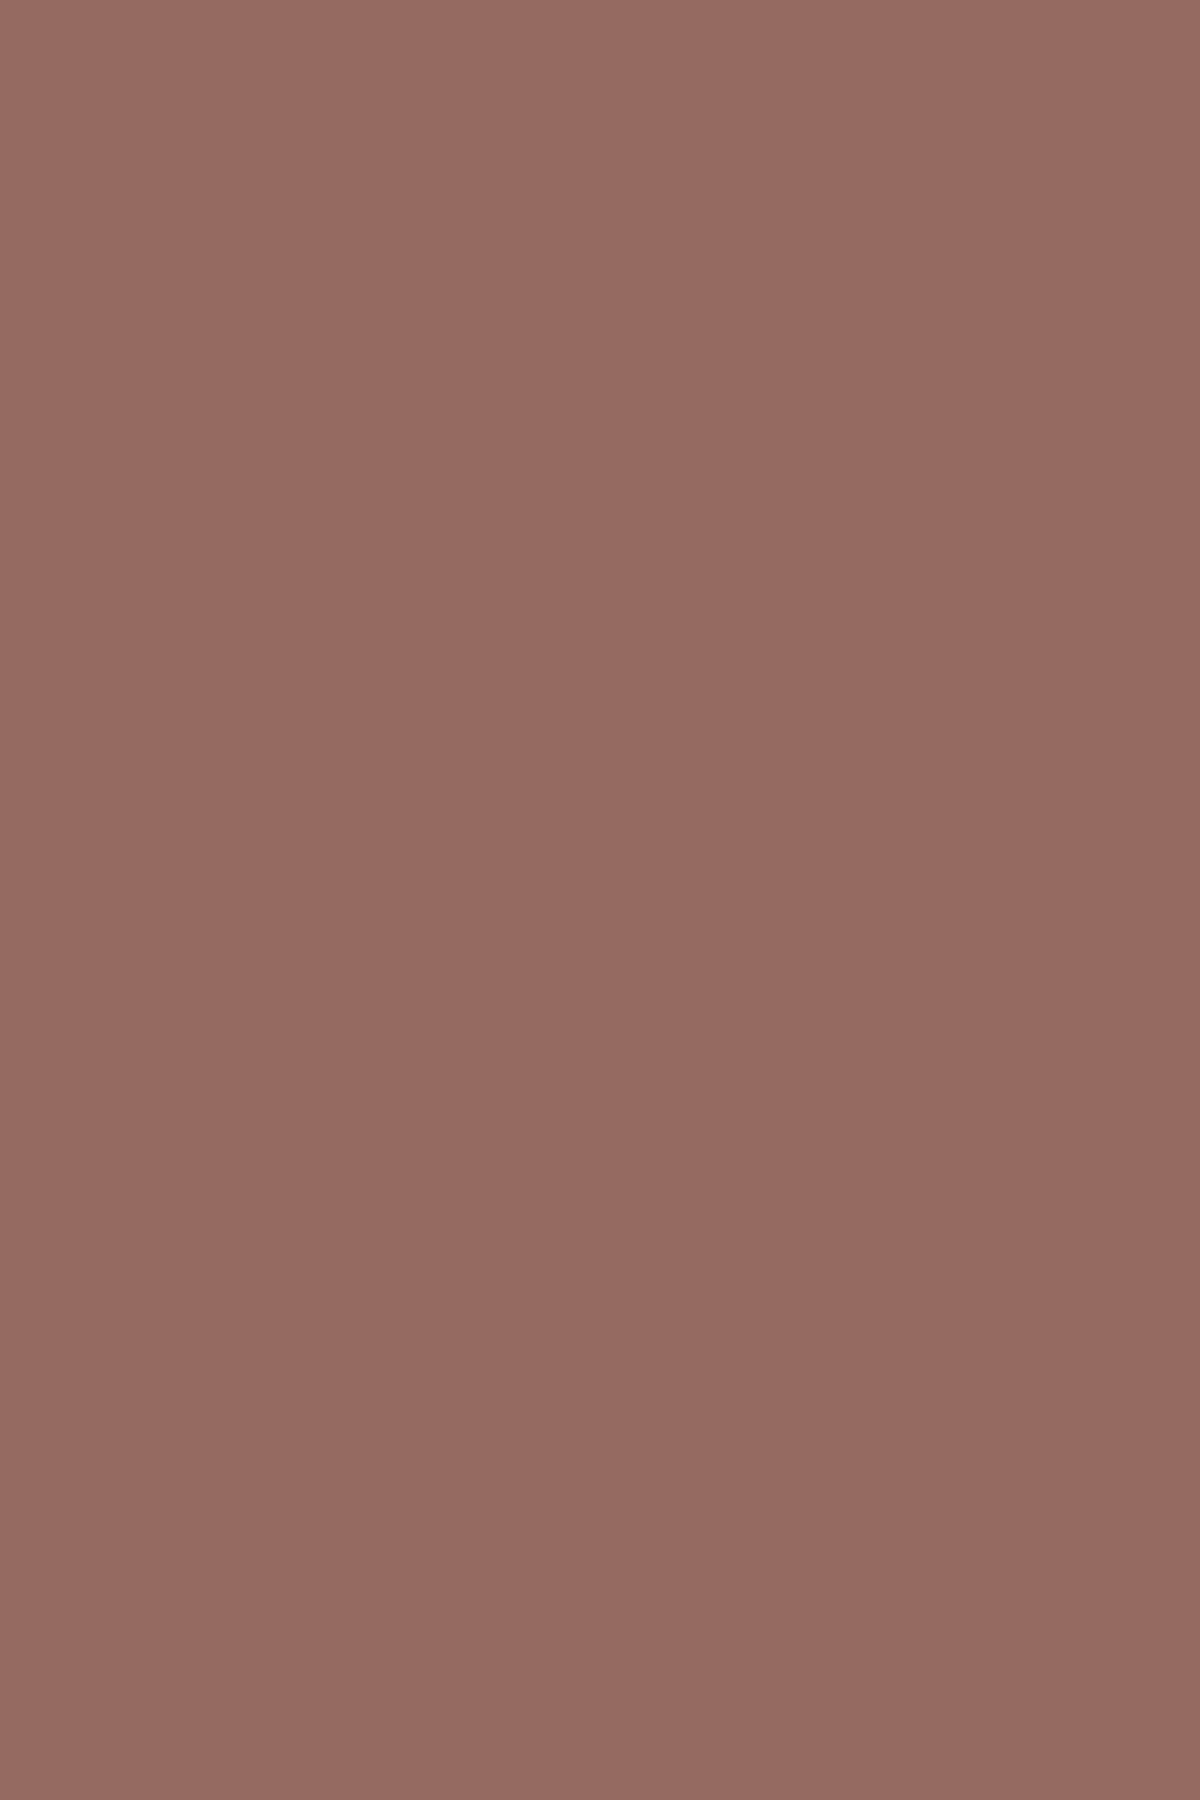 Кайтагская вышивка, Дагестан, XIX век. Х/б ткань, шелк, натуральные красители (Музей-заповедник — этнографический комплекс «Дагестанский аул»)